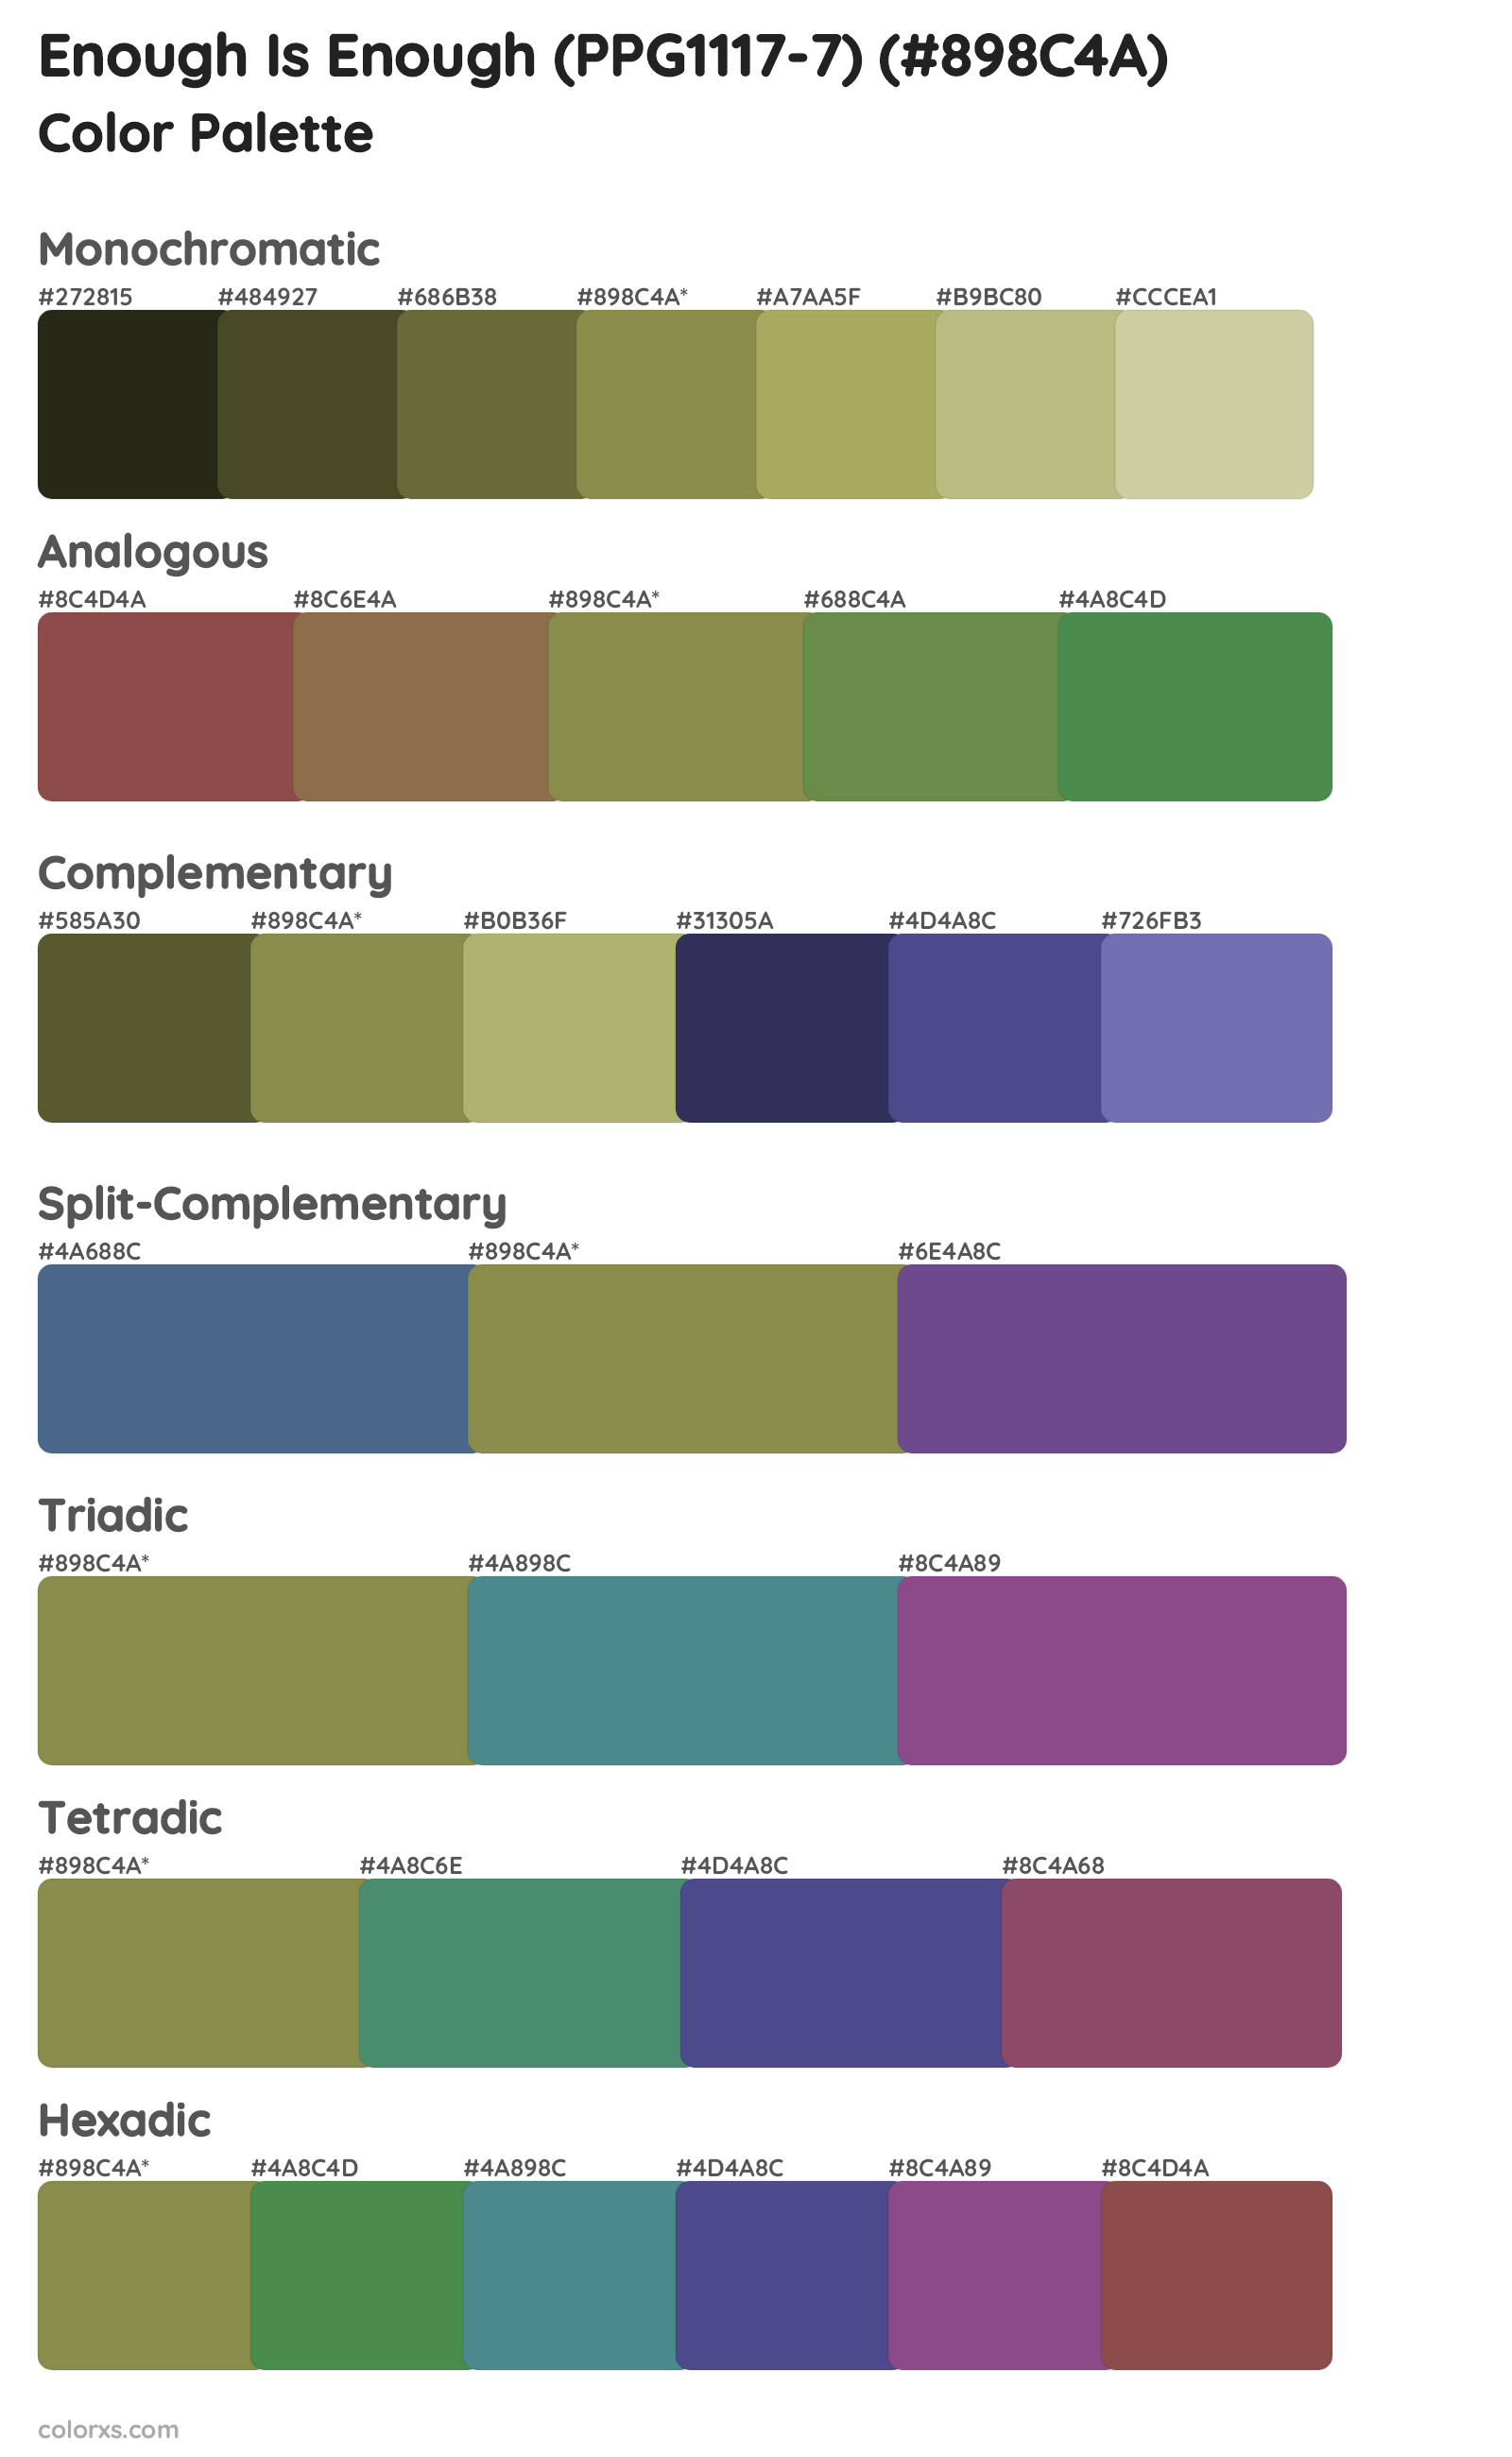 Enough Is Enough (PPG1117-7) Color Scheme Palettes